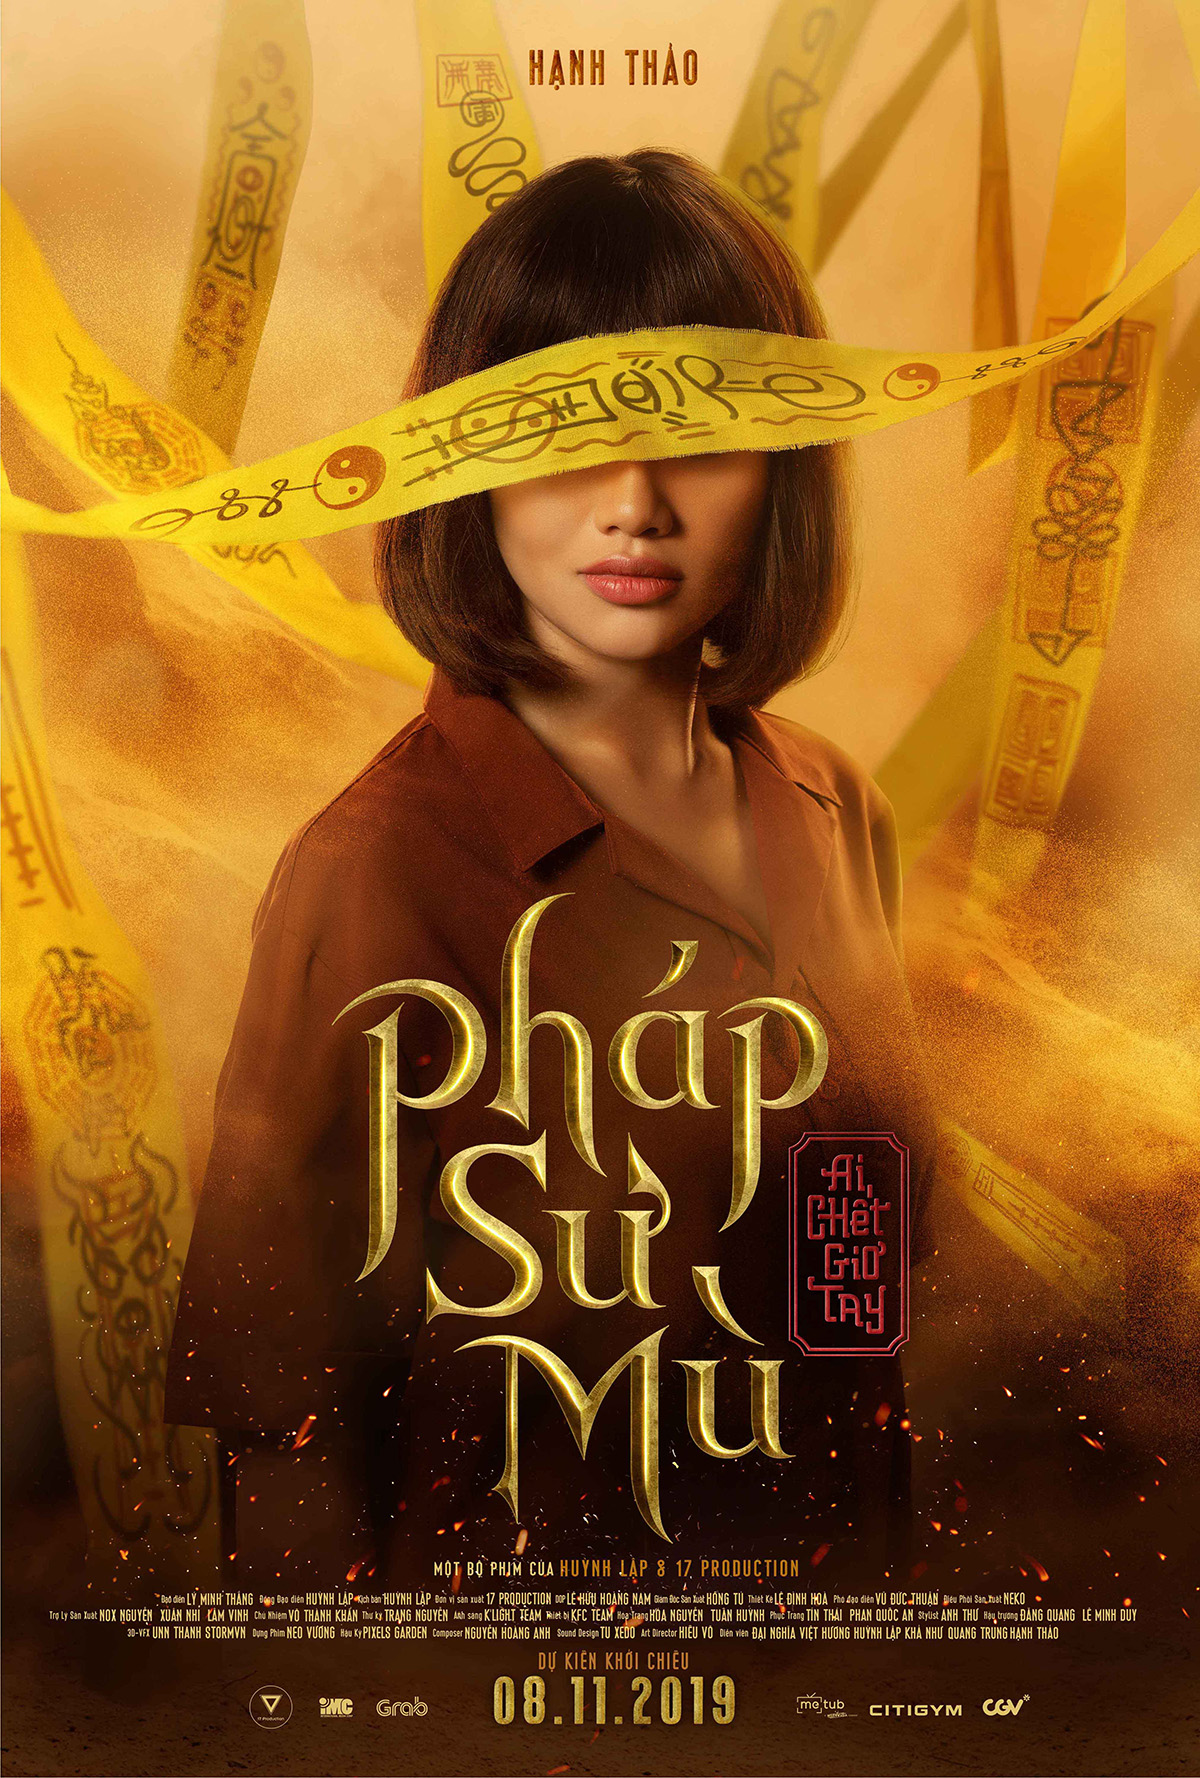 Huỳnh Lập tung tiếp Poster nhân vật trong 'Pháp sư mù' khiến fan nghẹt thở vì nóng lòng